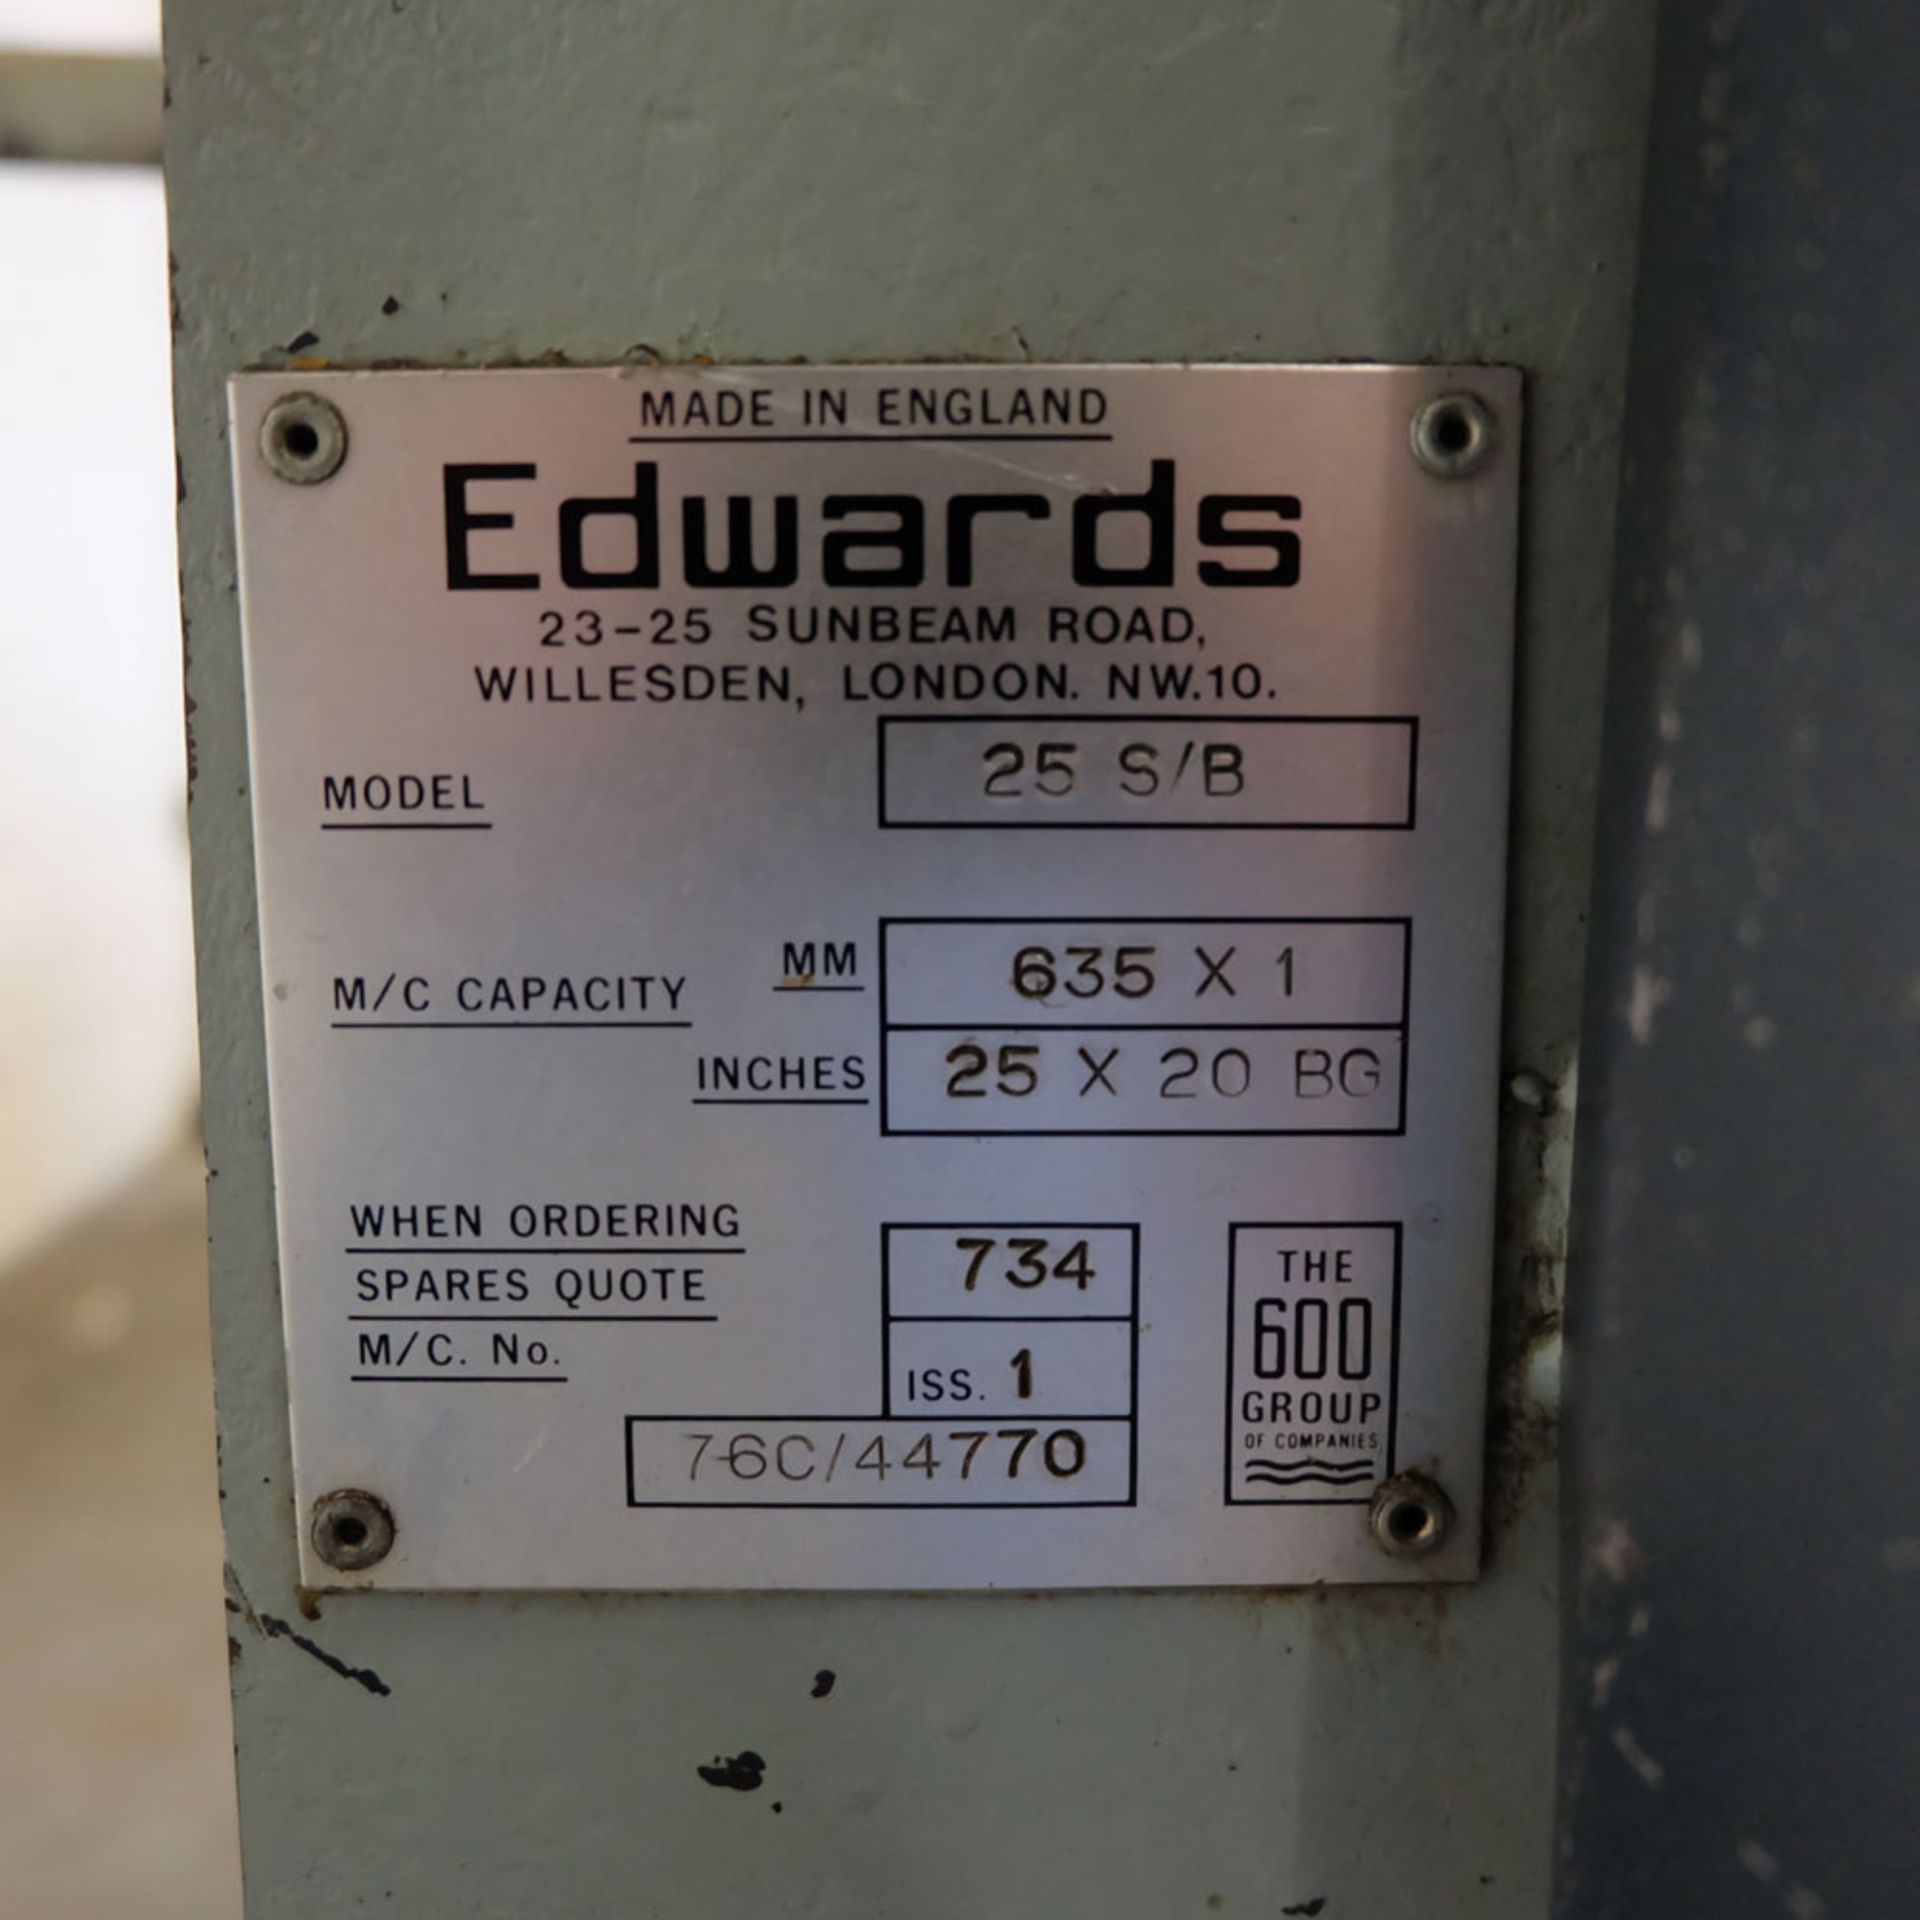 Edwards Model 25 S/B Manual Sheet Metal Folding Machine. - Image 5 of 7